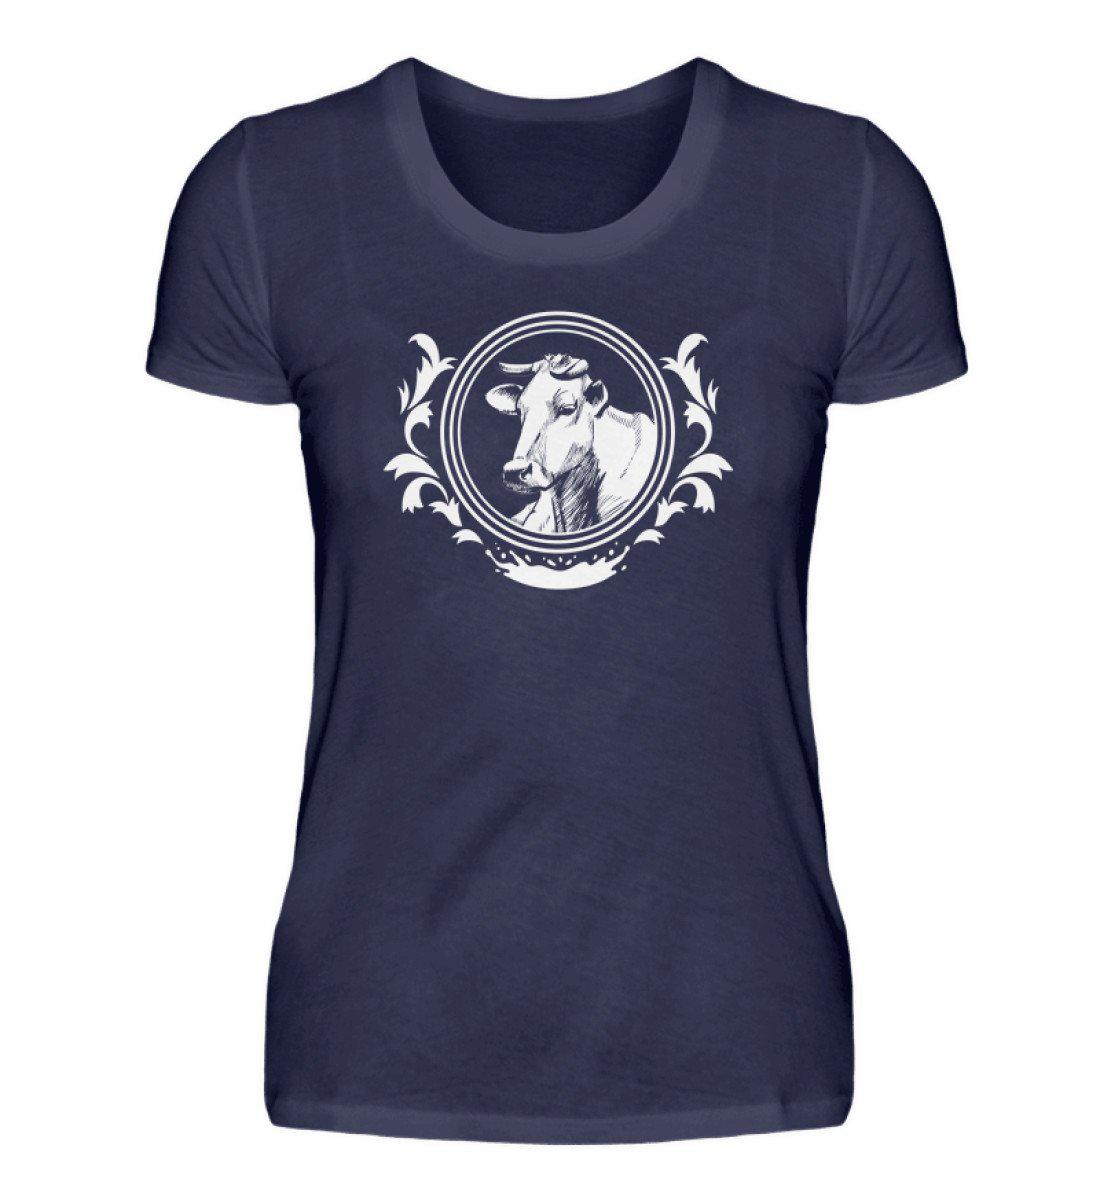 Kuhkopf 2 · Damen T-Shirt-Damen Basic T-Shirt-Navy-S-Agrarstarz